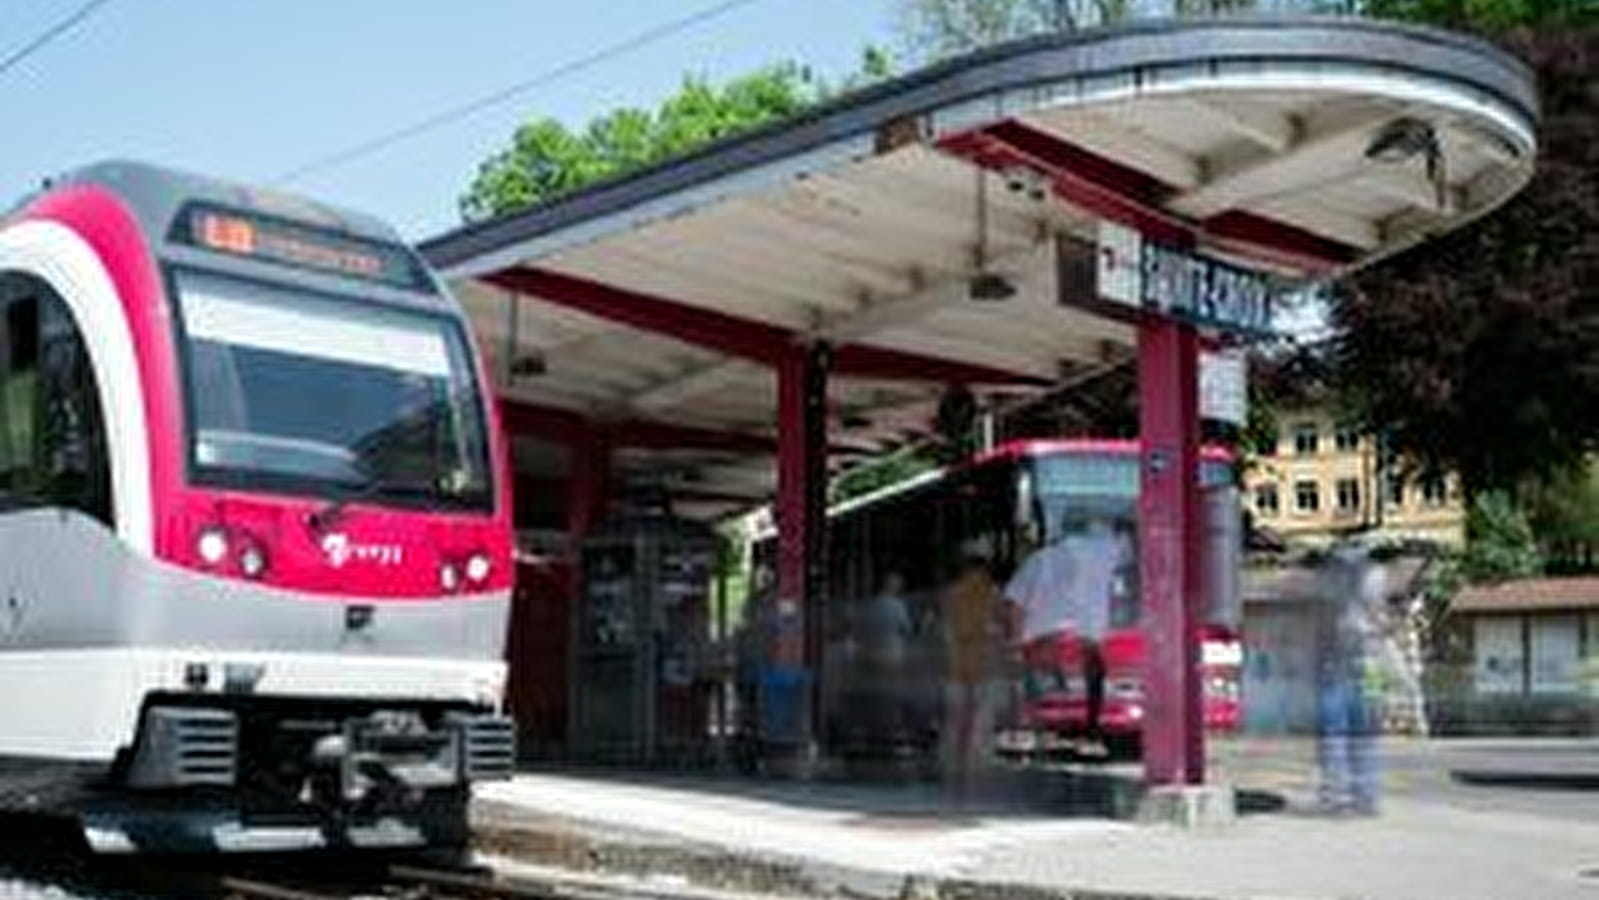 Gare CFF - Sainte-Croix